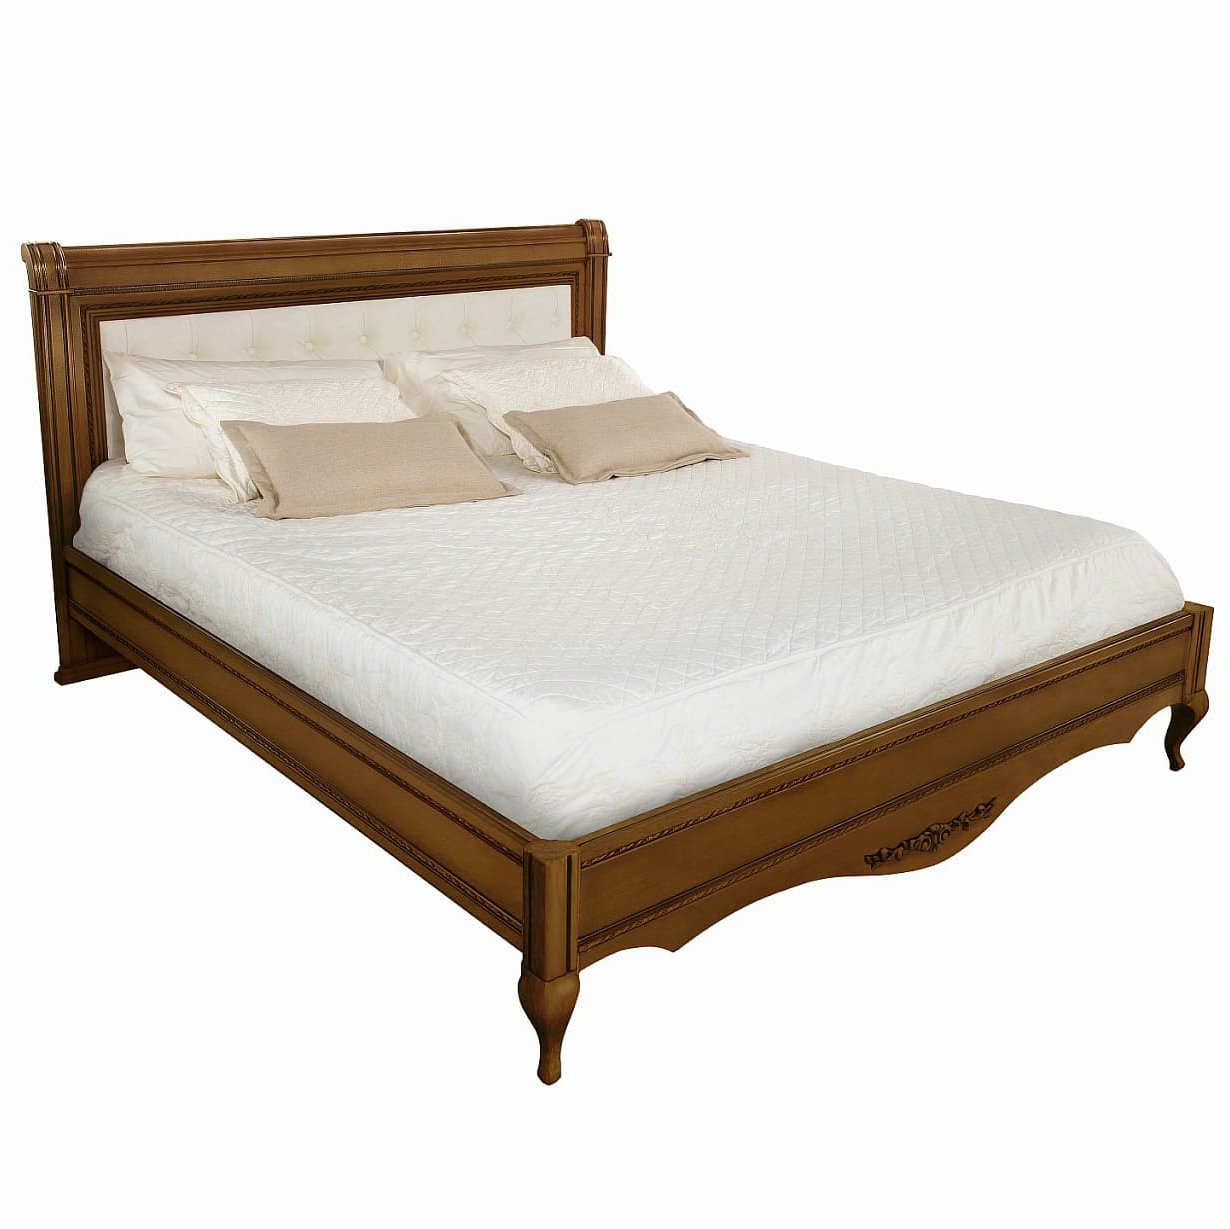 Кровать Timber Неаполь, двуспальная с мягким изголовьем 160x200 см цвет: орех (T-520)T-520